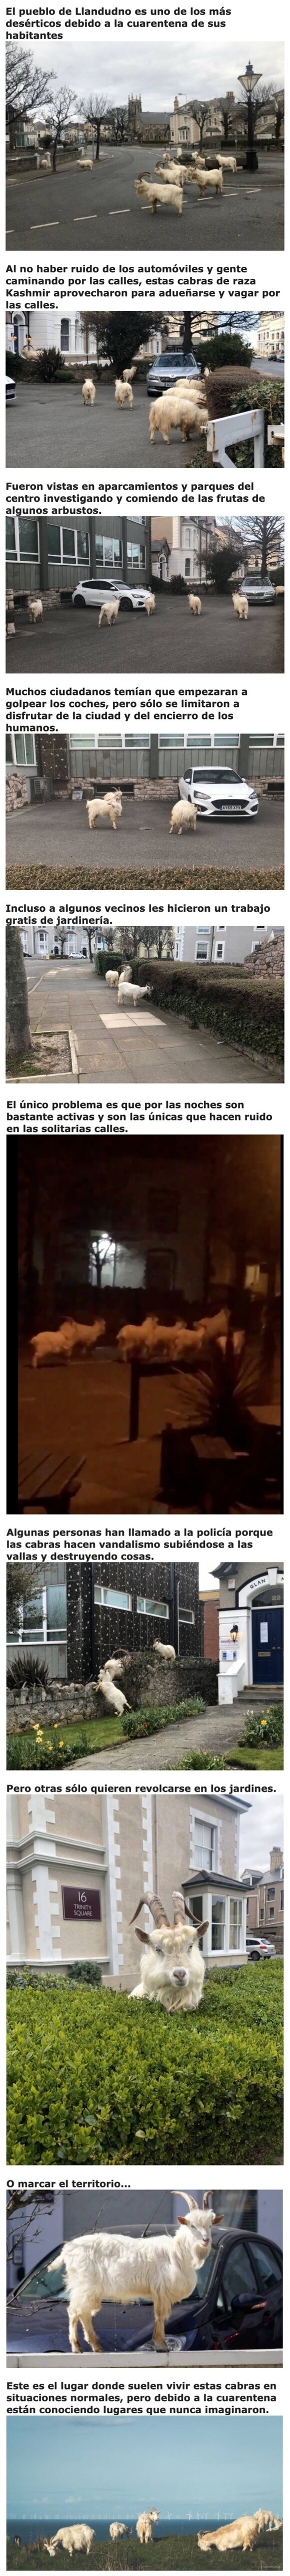 9814 - Un centenar de cabras invaden las calles del Reino Unido debido a la cuarentena